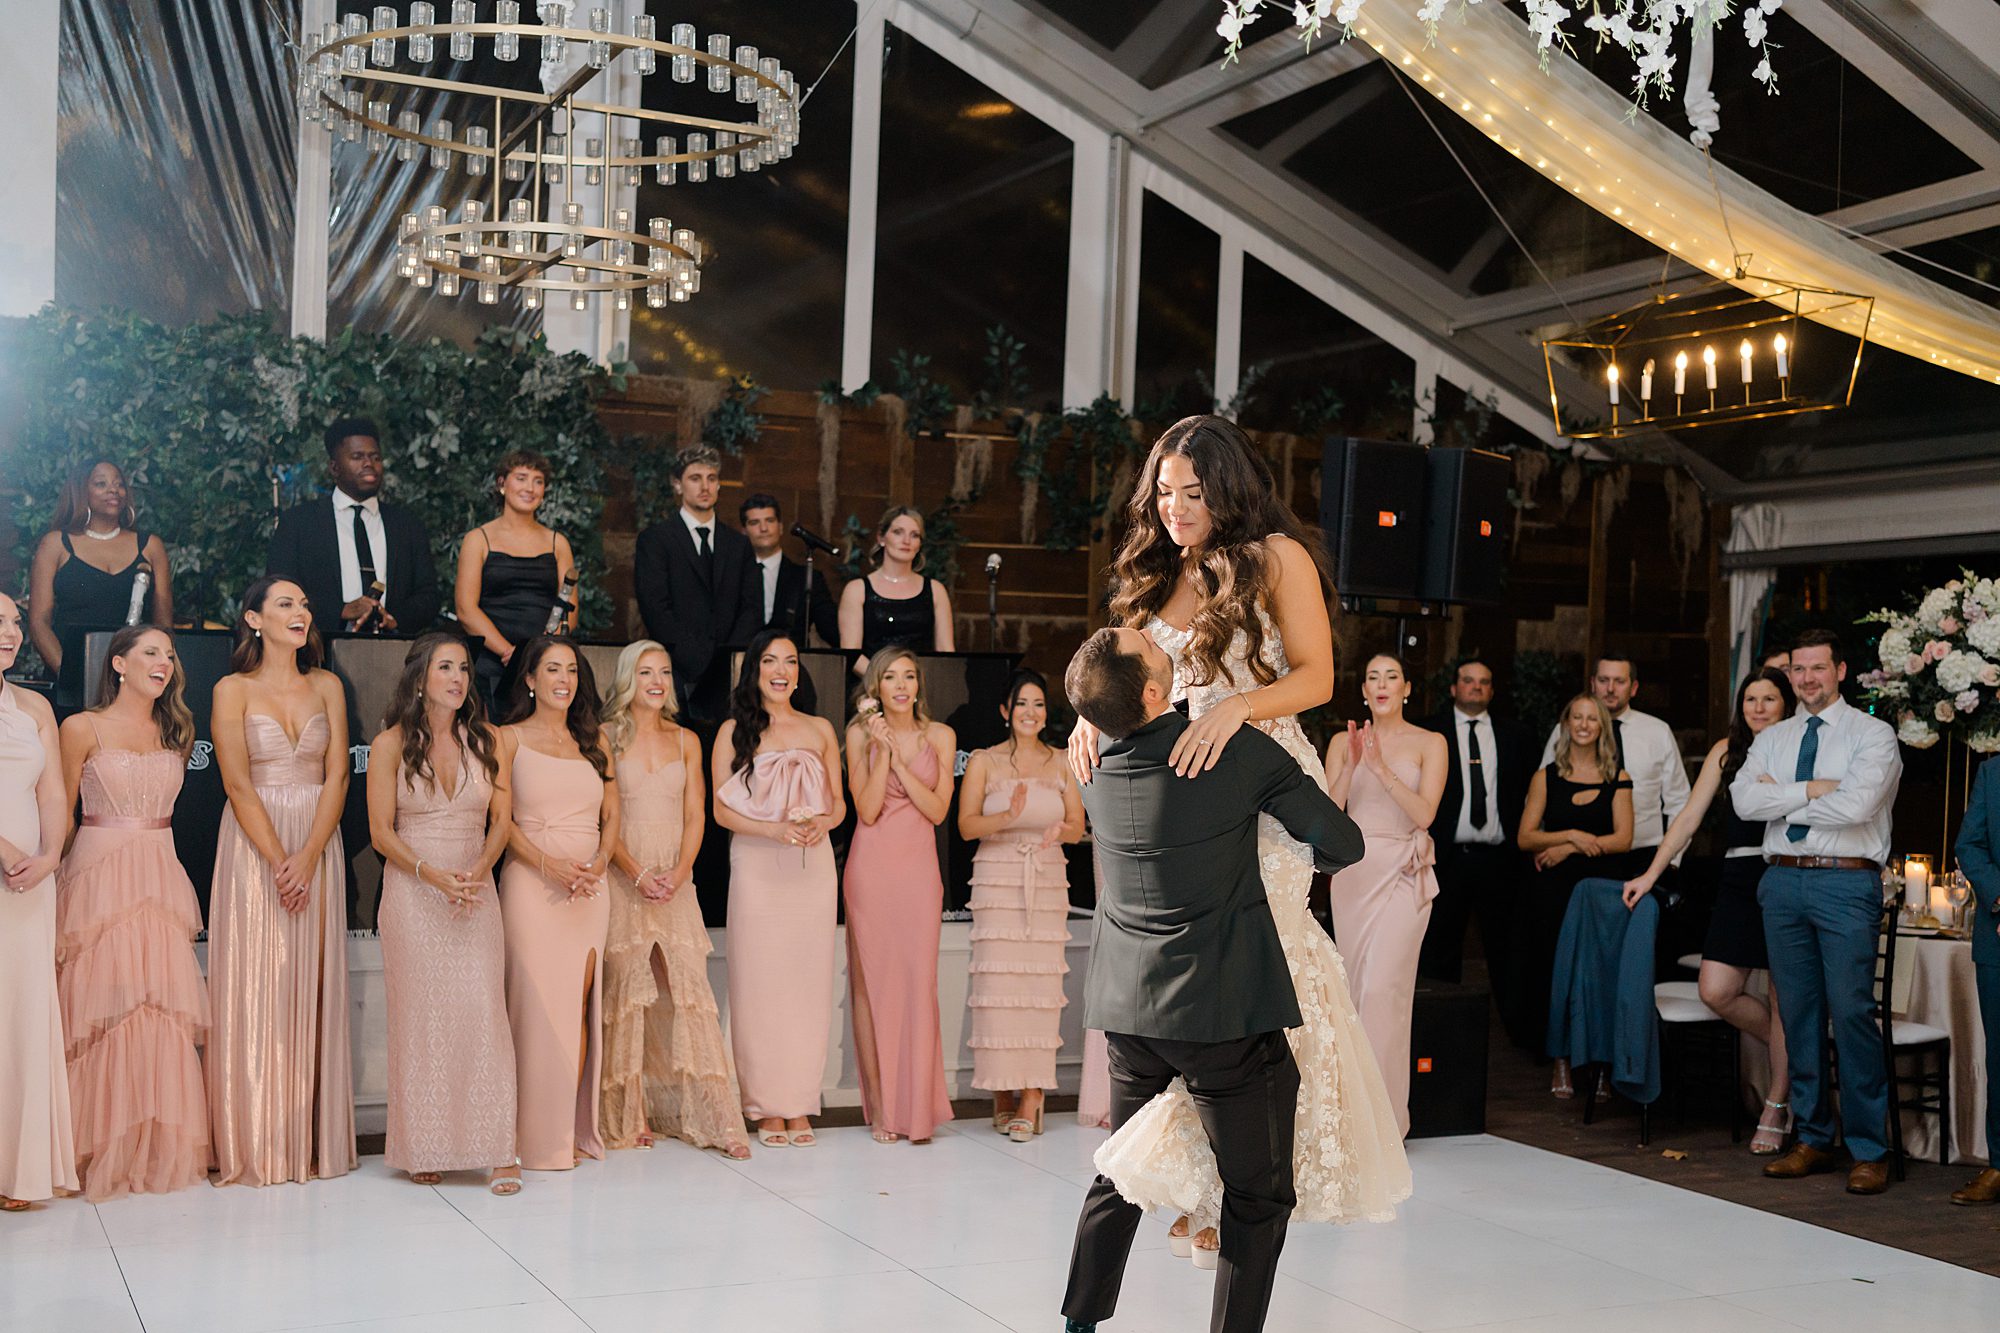 groom lifts bride up on dance floor